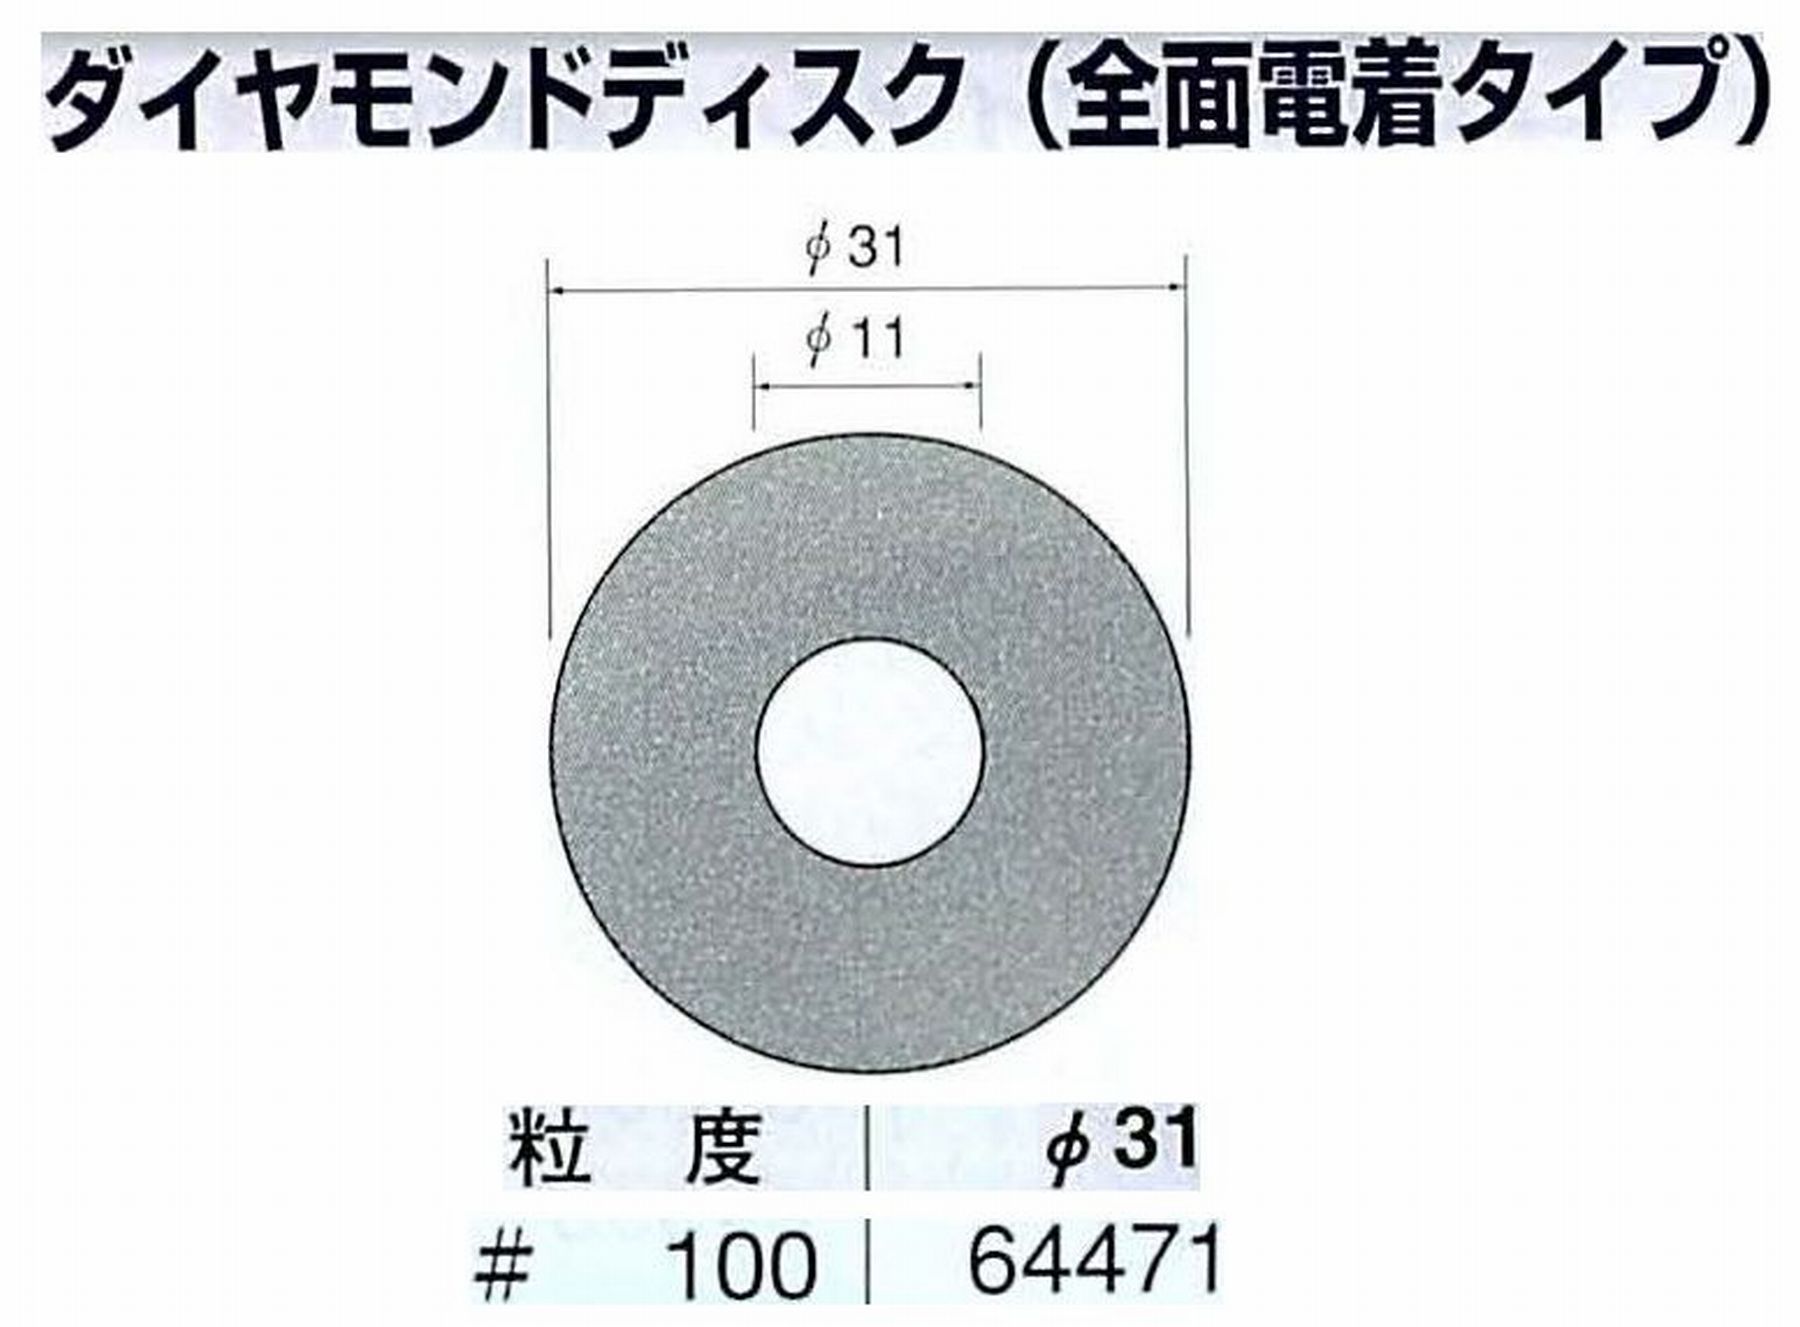 ナカニシ/NAKANISHI アングルグラインダ(電動・エアー) アングルアタッチメント専用工具 ダイヤモンドディスク(全面電着タイプ) 64471